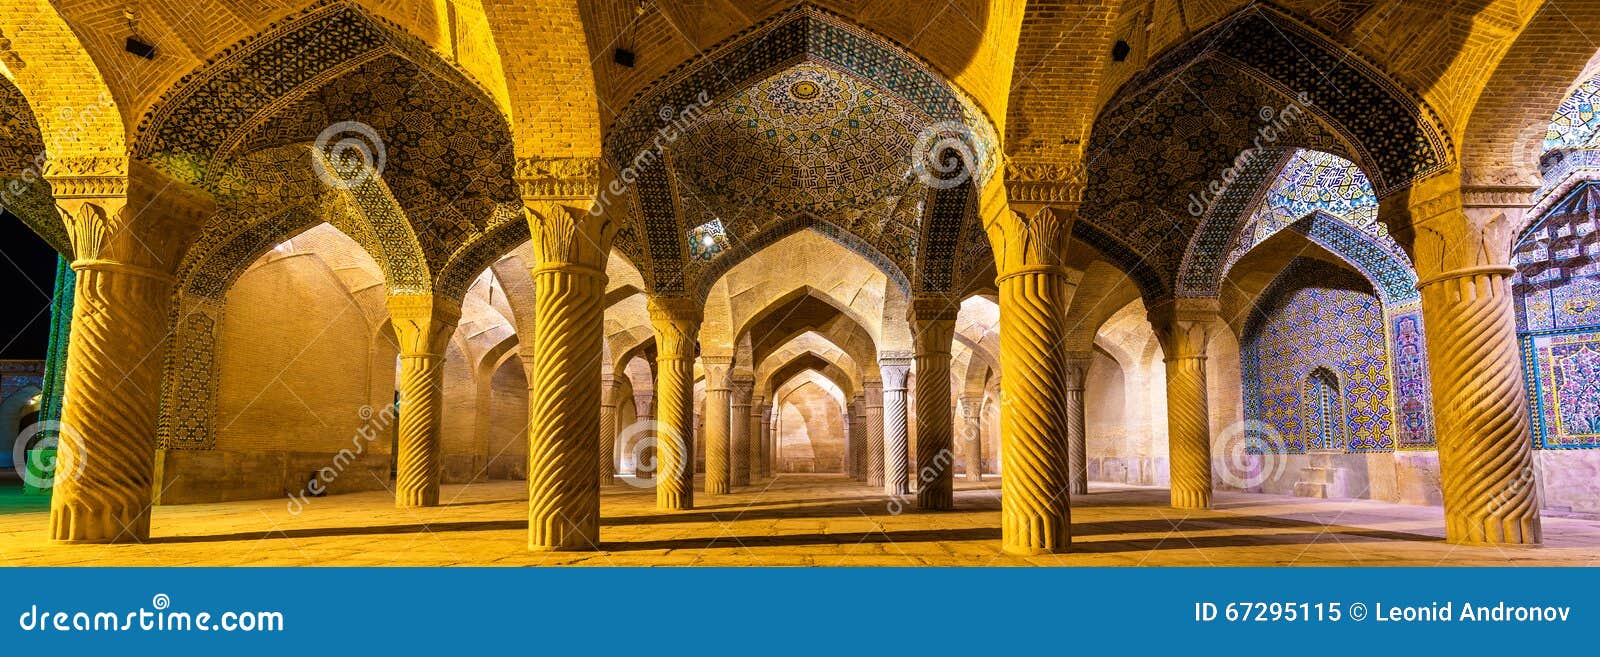 interior of vakil mosque in shiraz, iran